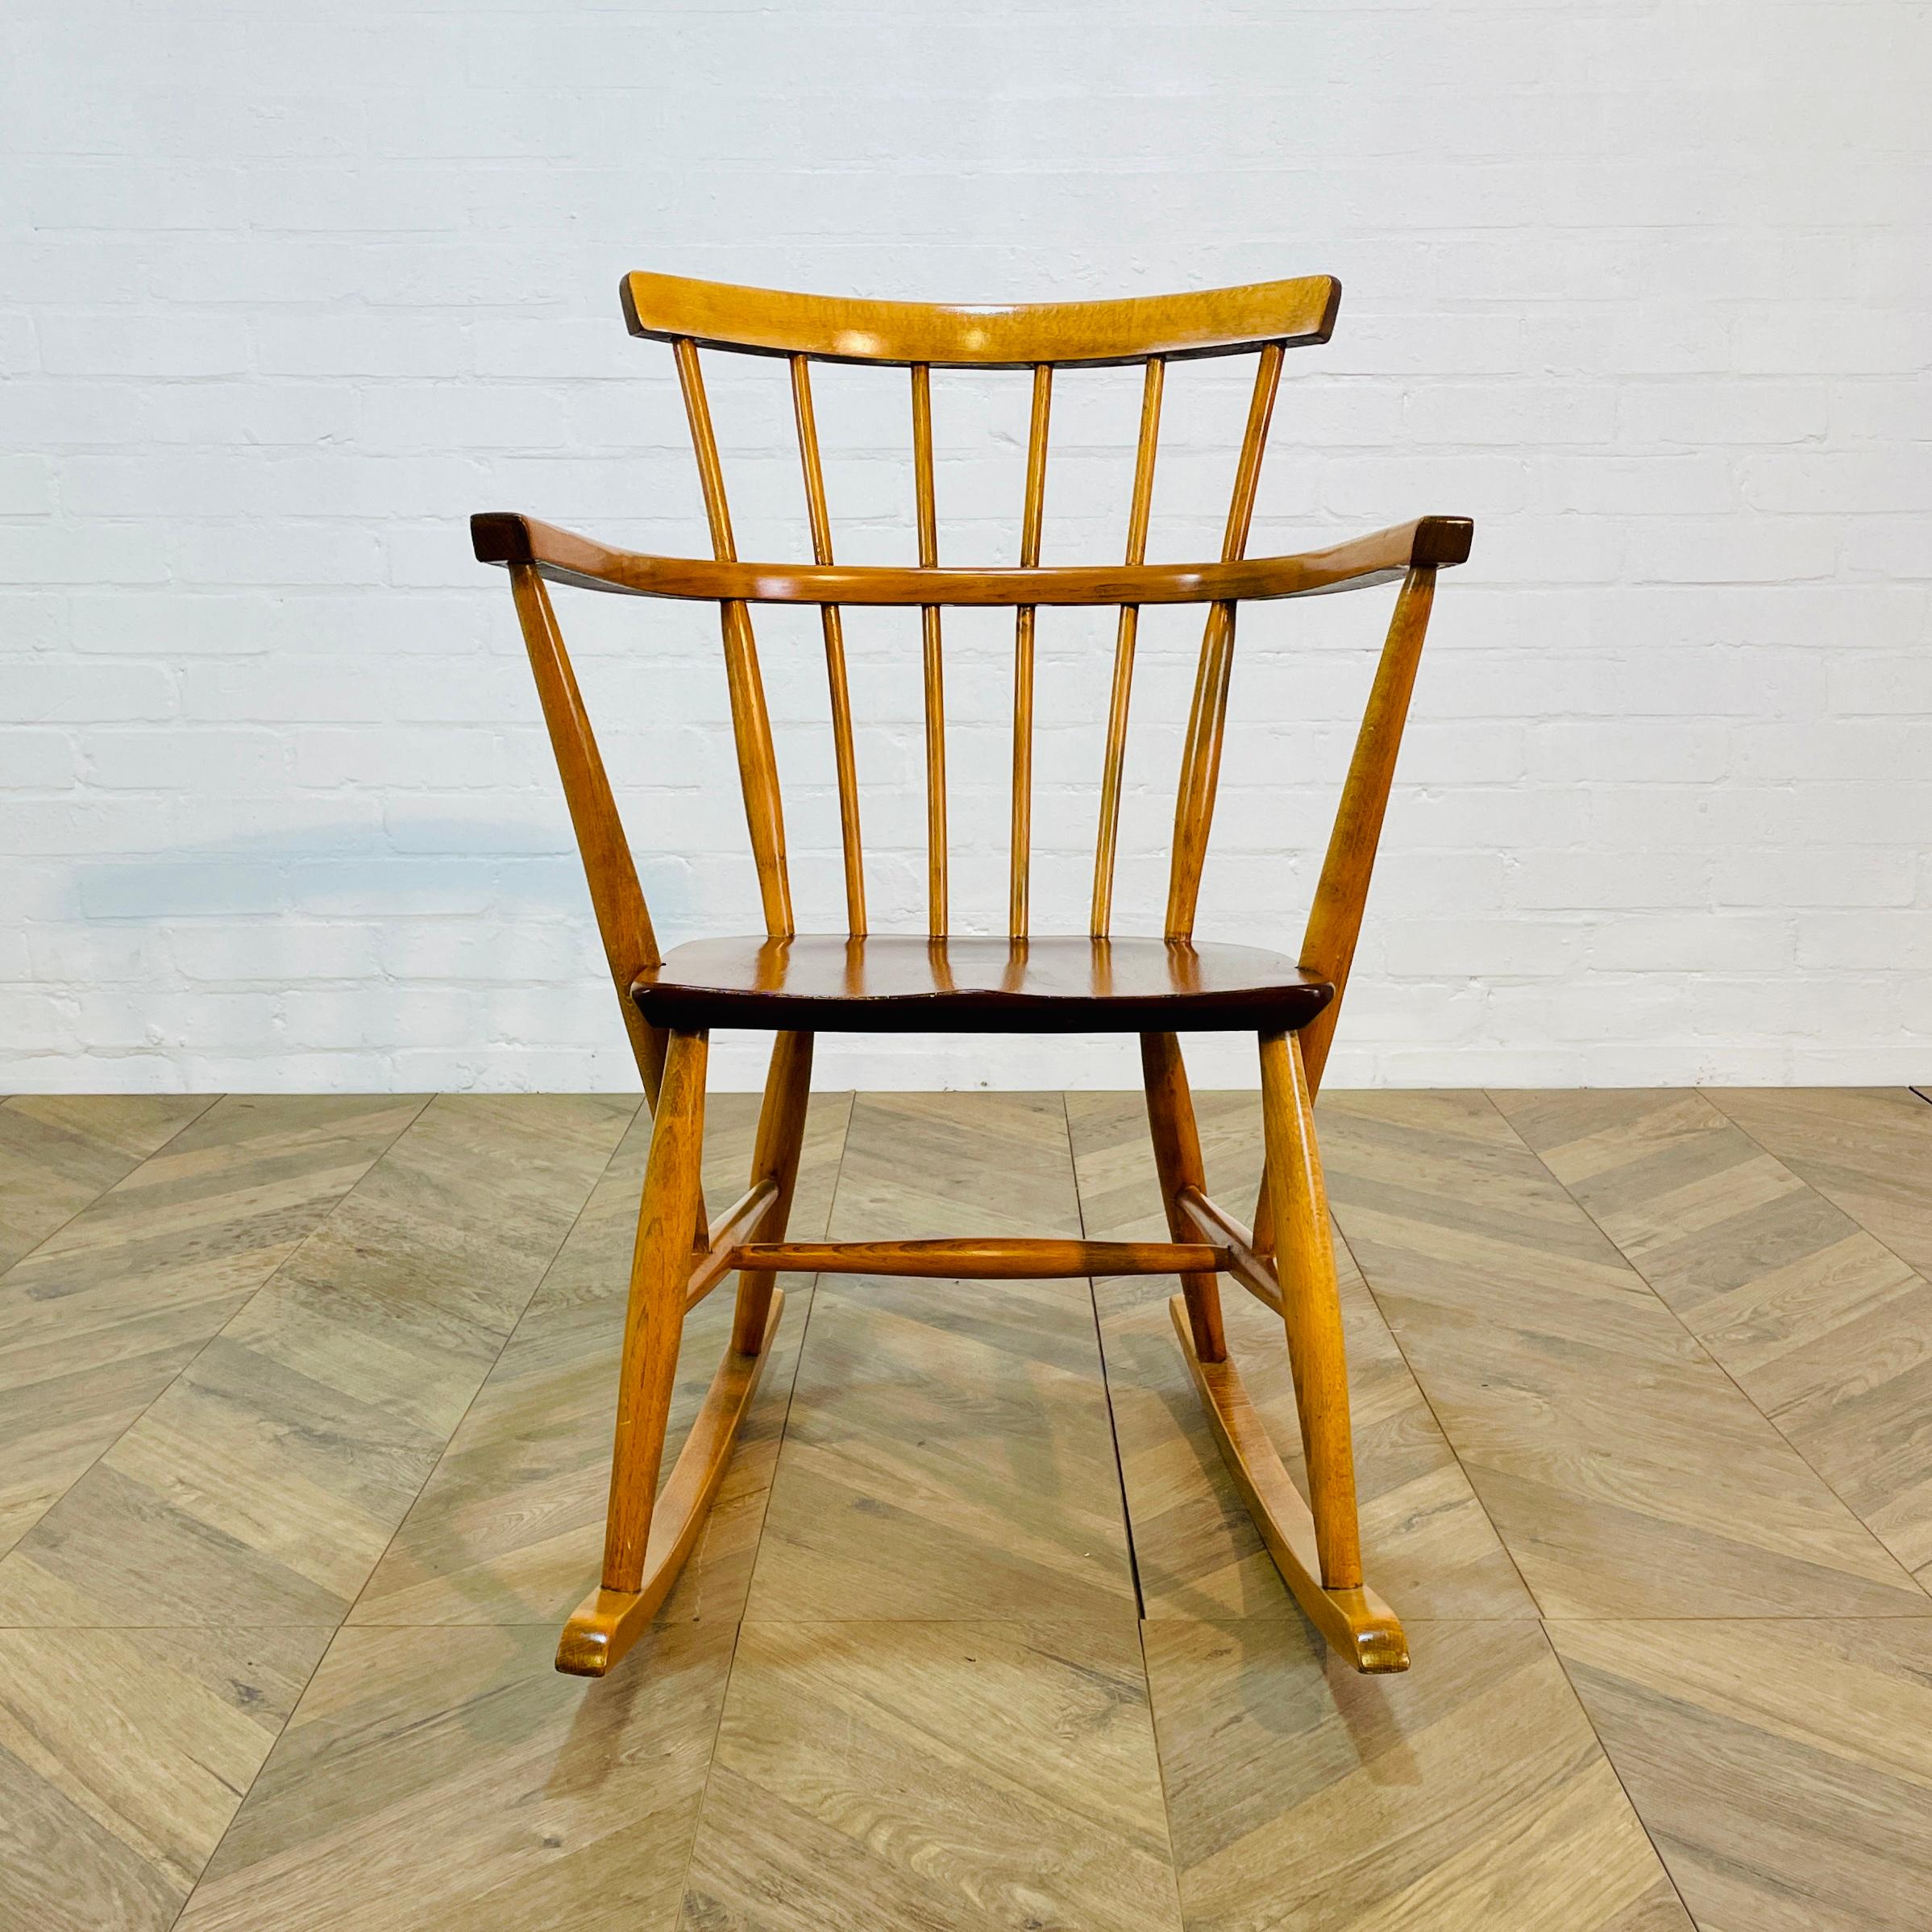 Magnifique fauteuil à bascule à dossier en fuseau bien proportionné, vers les années 1960.

La chaise, fabriquée en hêtre et en orme, est solide dans sa construction et en bon état dans l'ensemble, avec seulement des éraflures et des marques liées à